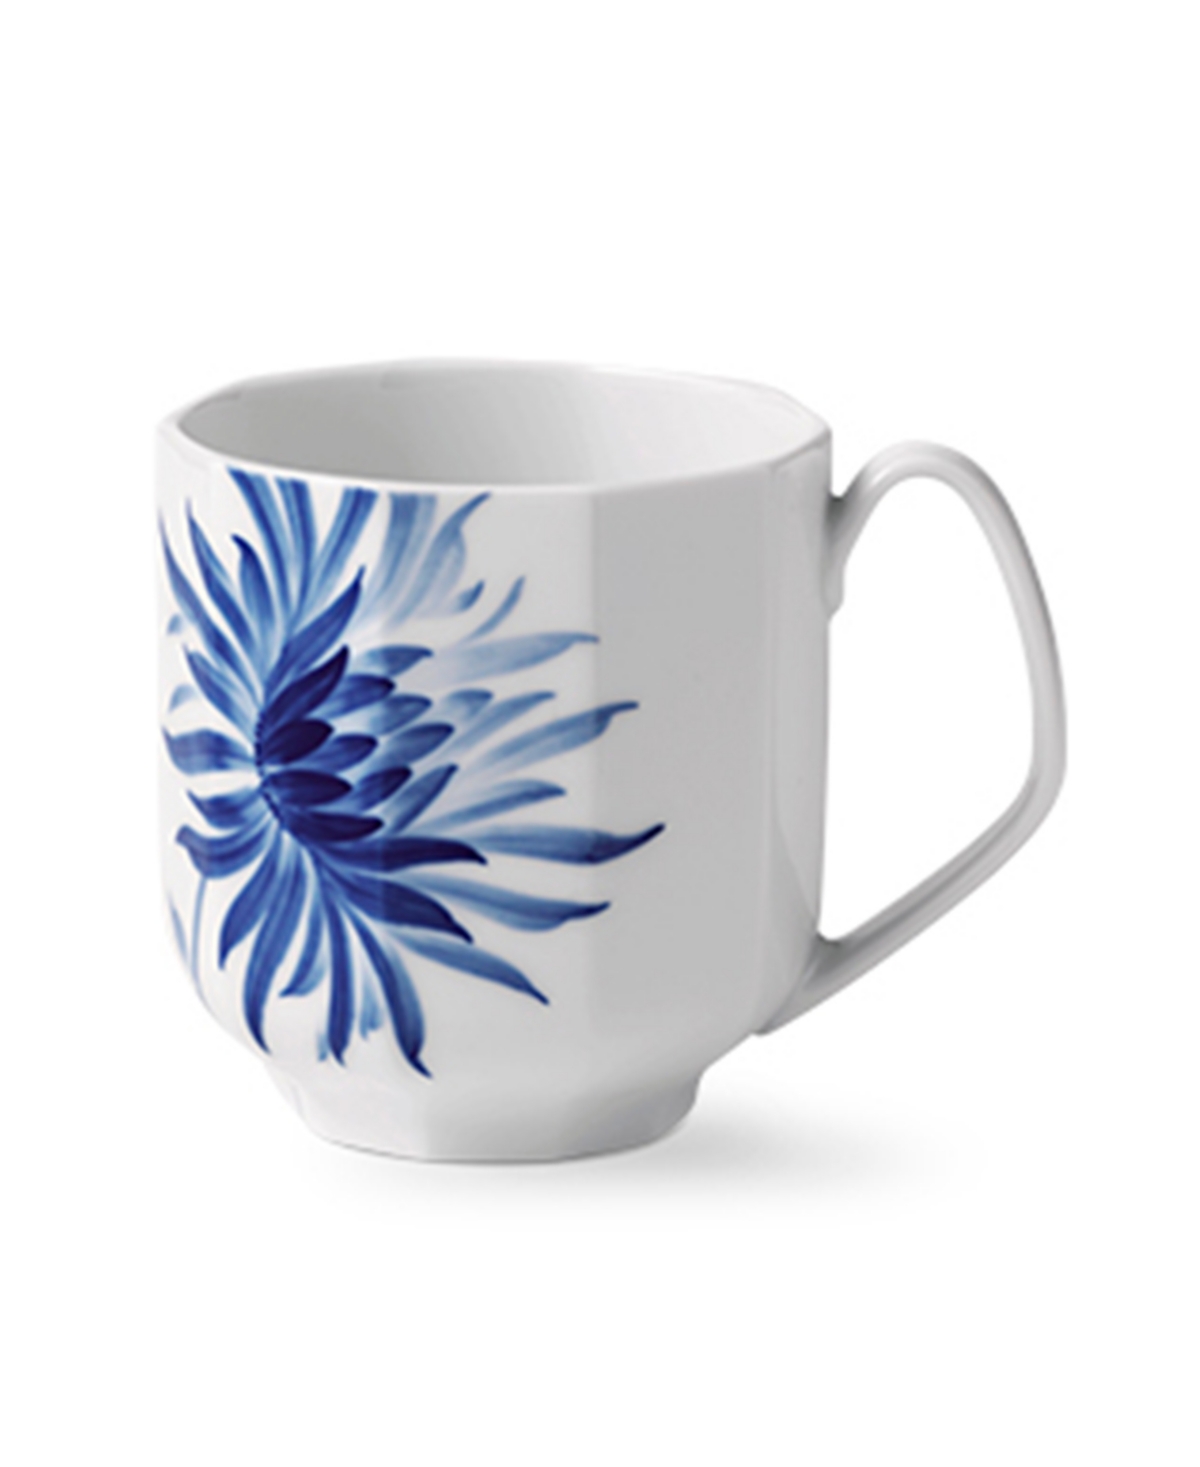 Blomst Mug Dahlia, 11 oz - Blue and White